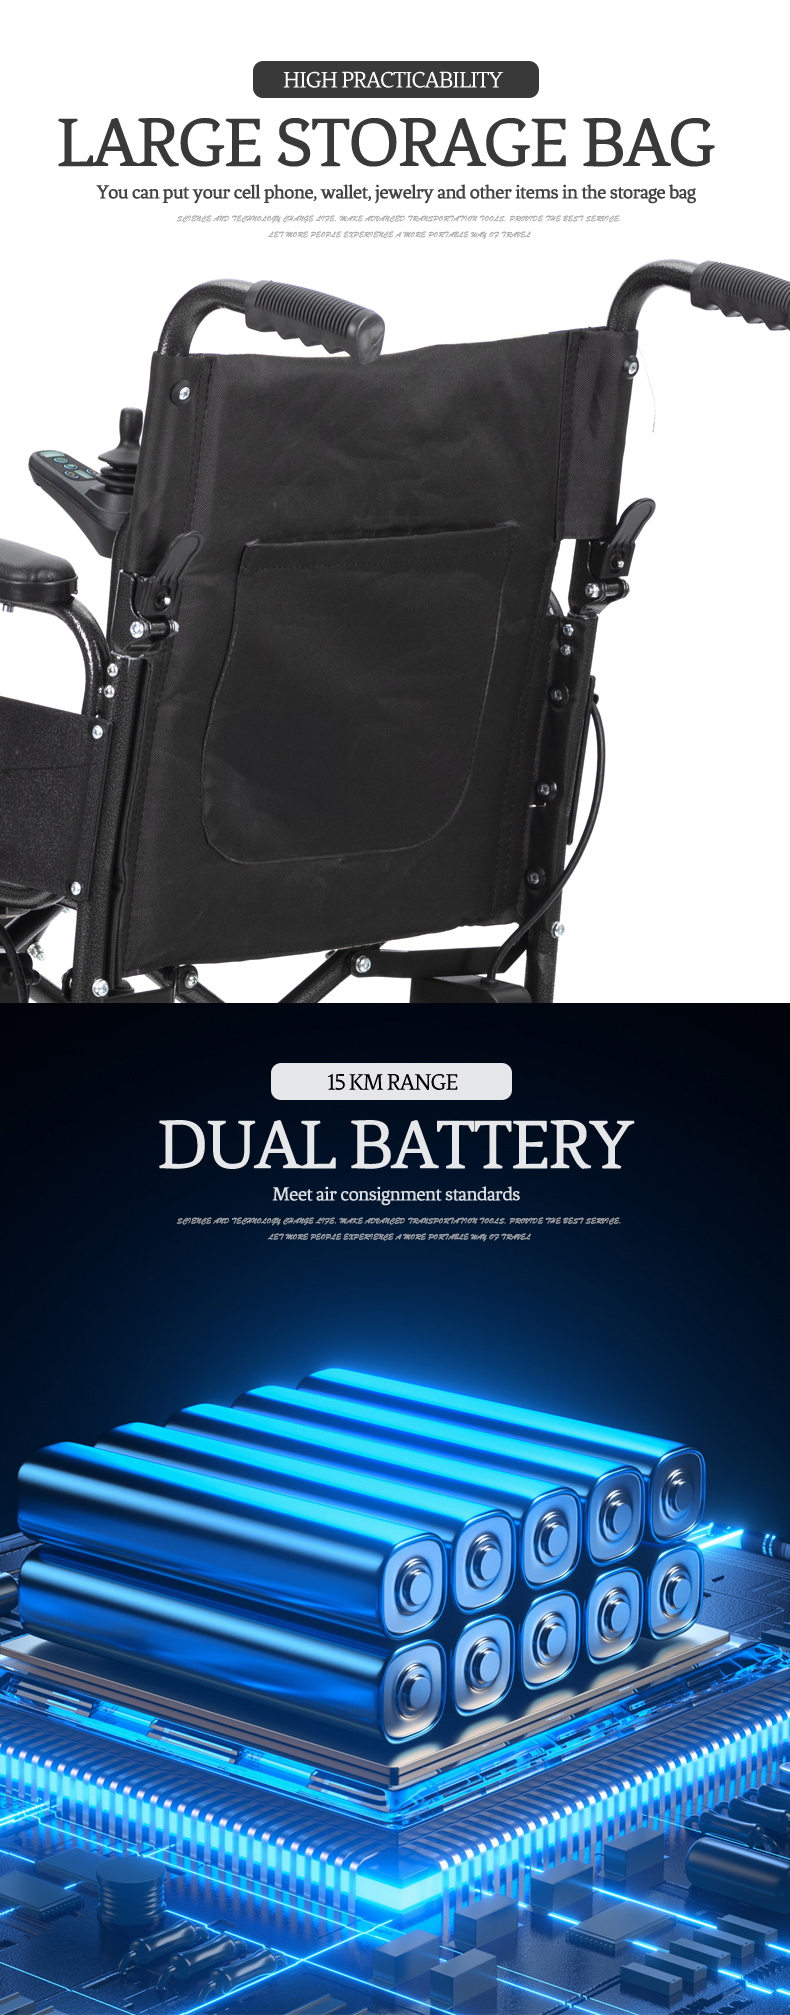 lagana električna invalidska kolica za starije osobe